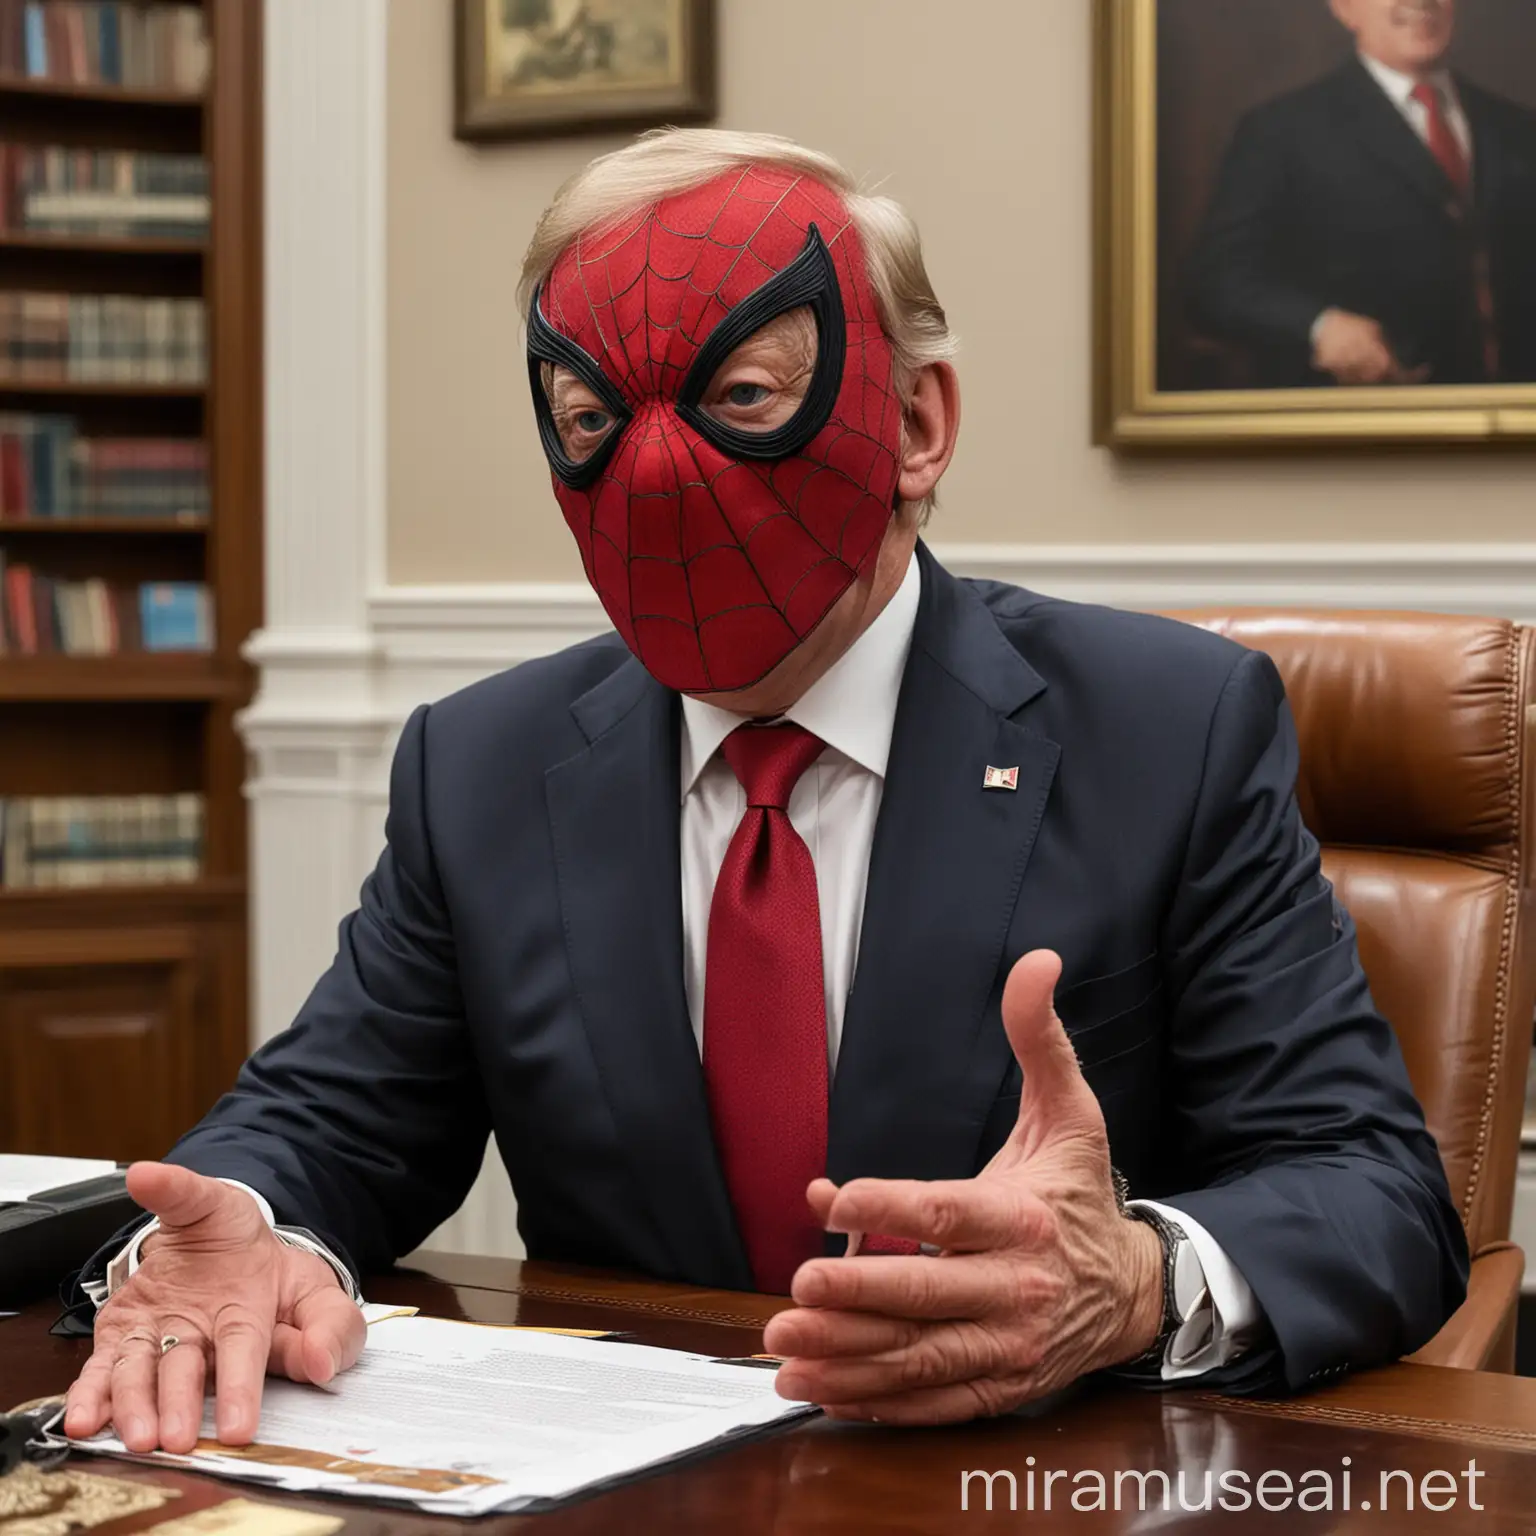 Призеднт страны, страны, в своём кабинете  показывает лайк, в маске человека паука
